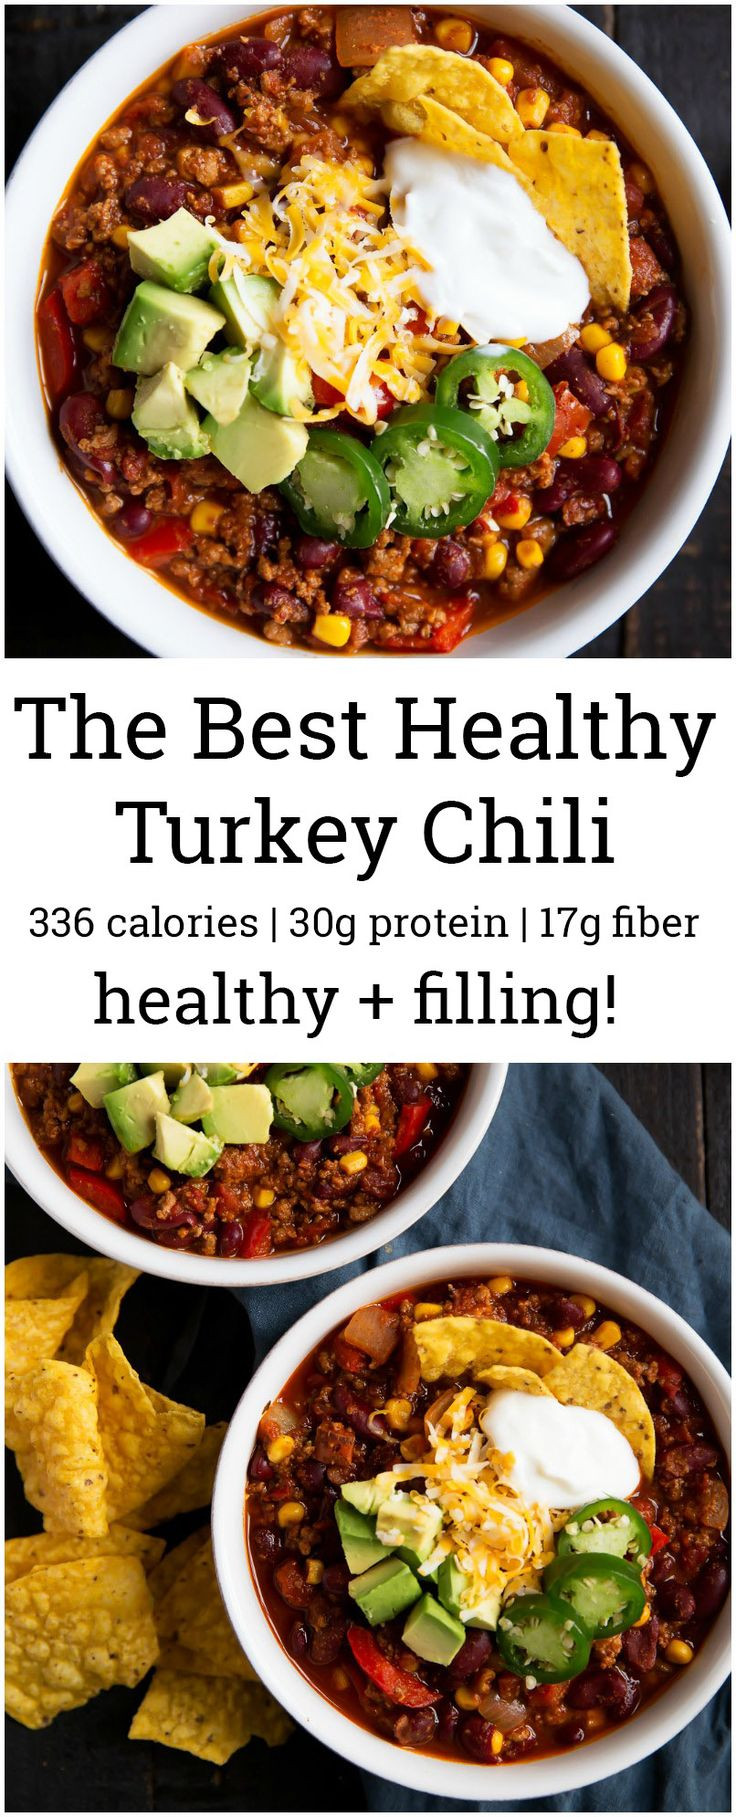 Heart Healthy Ground Turkey Recipes
 100 Heart healthy recipes on Pinterest